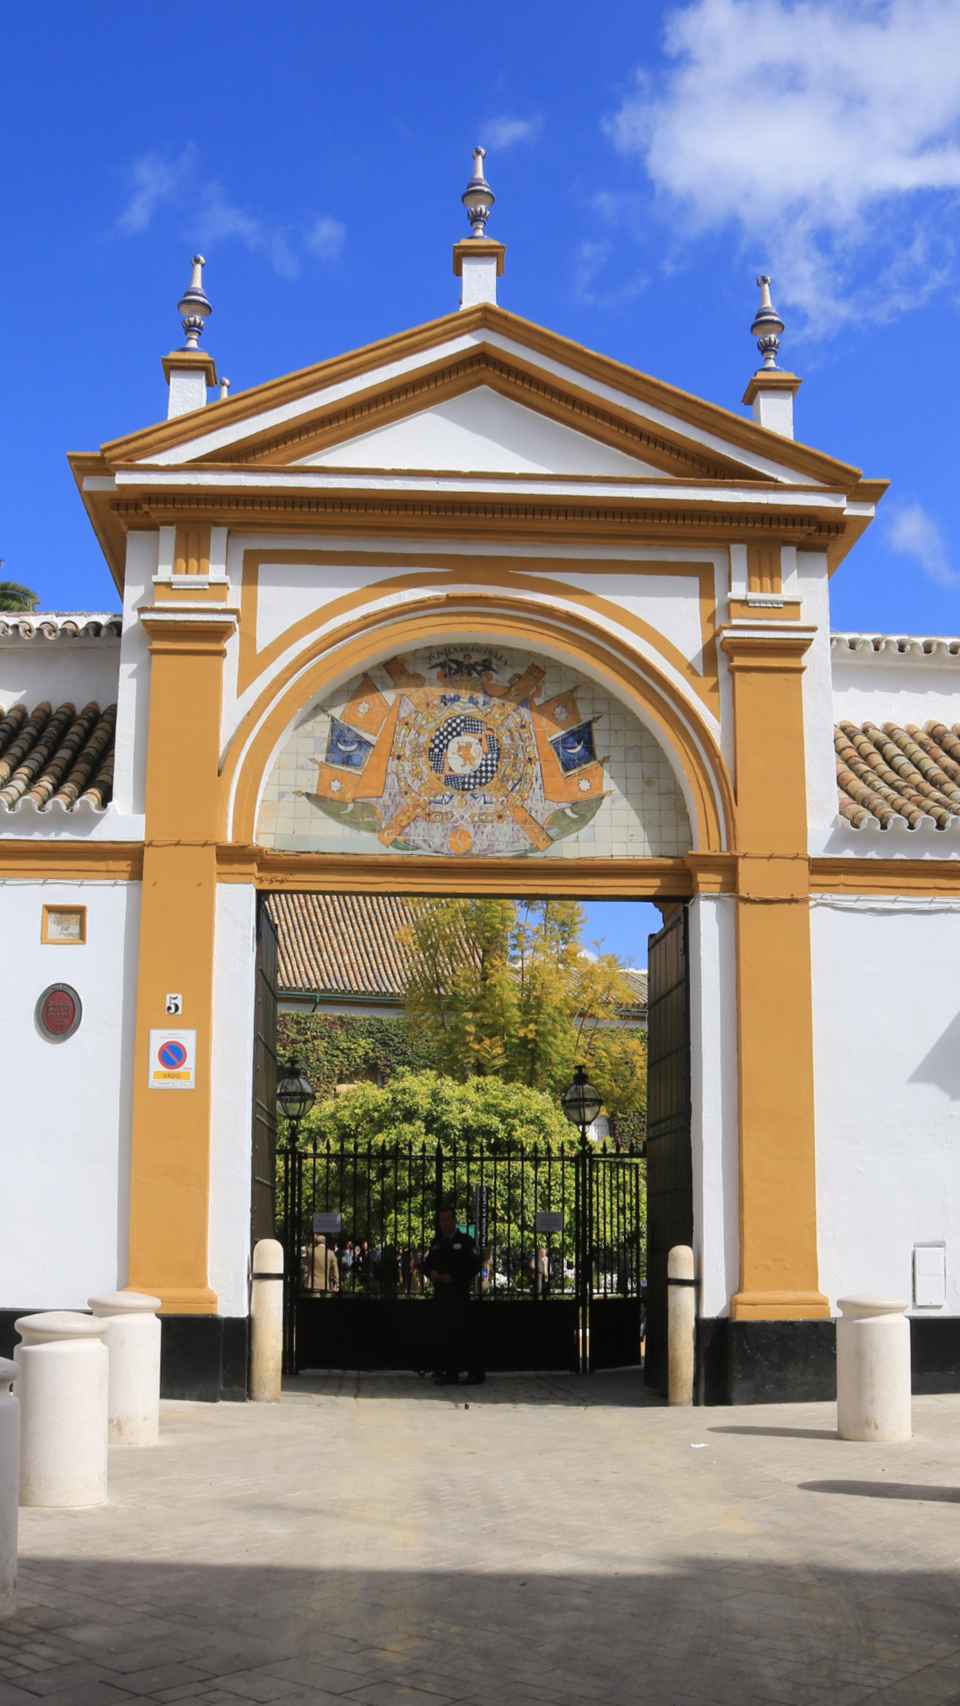 La fachada del palacio.